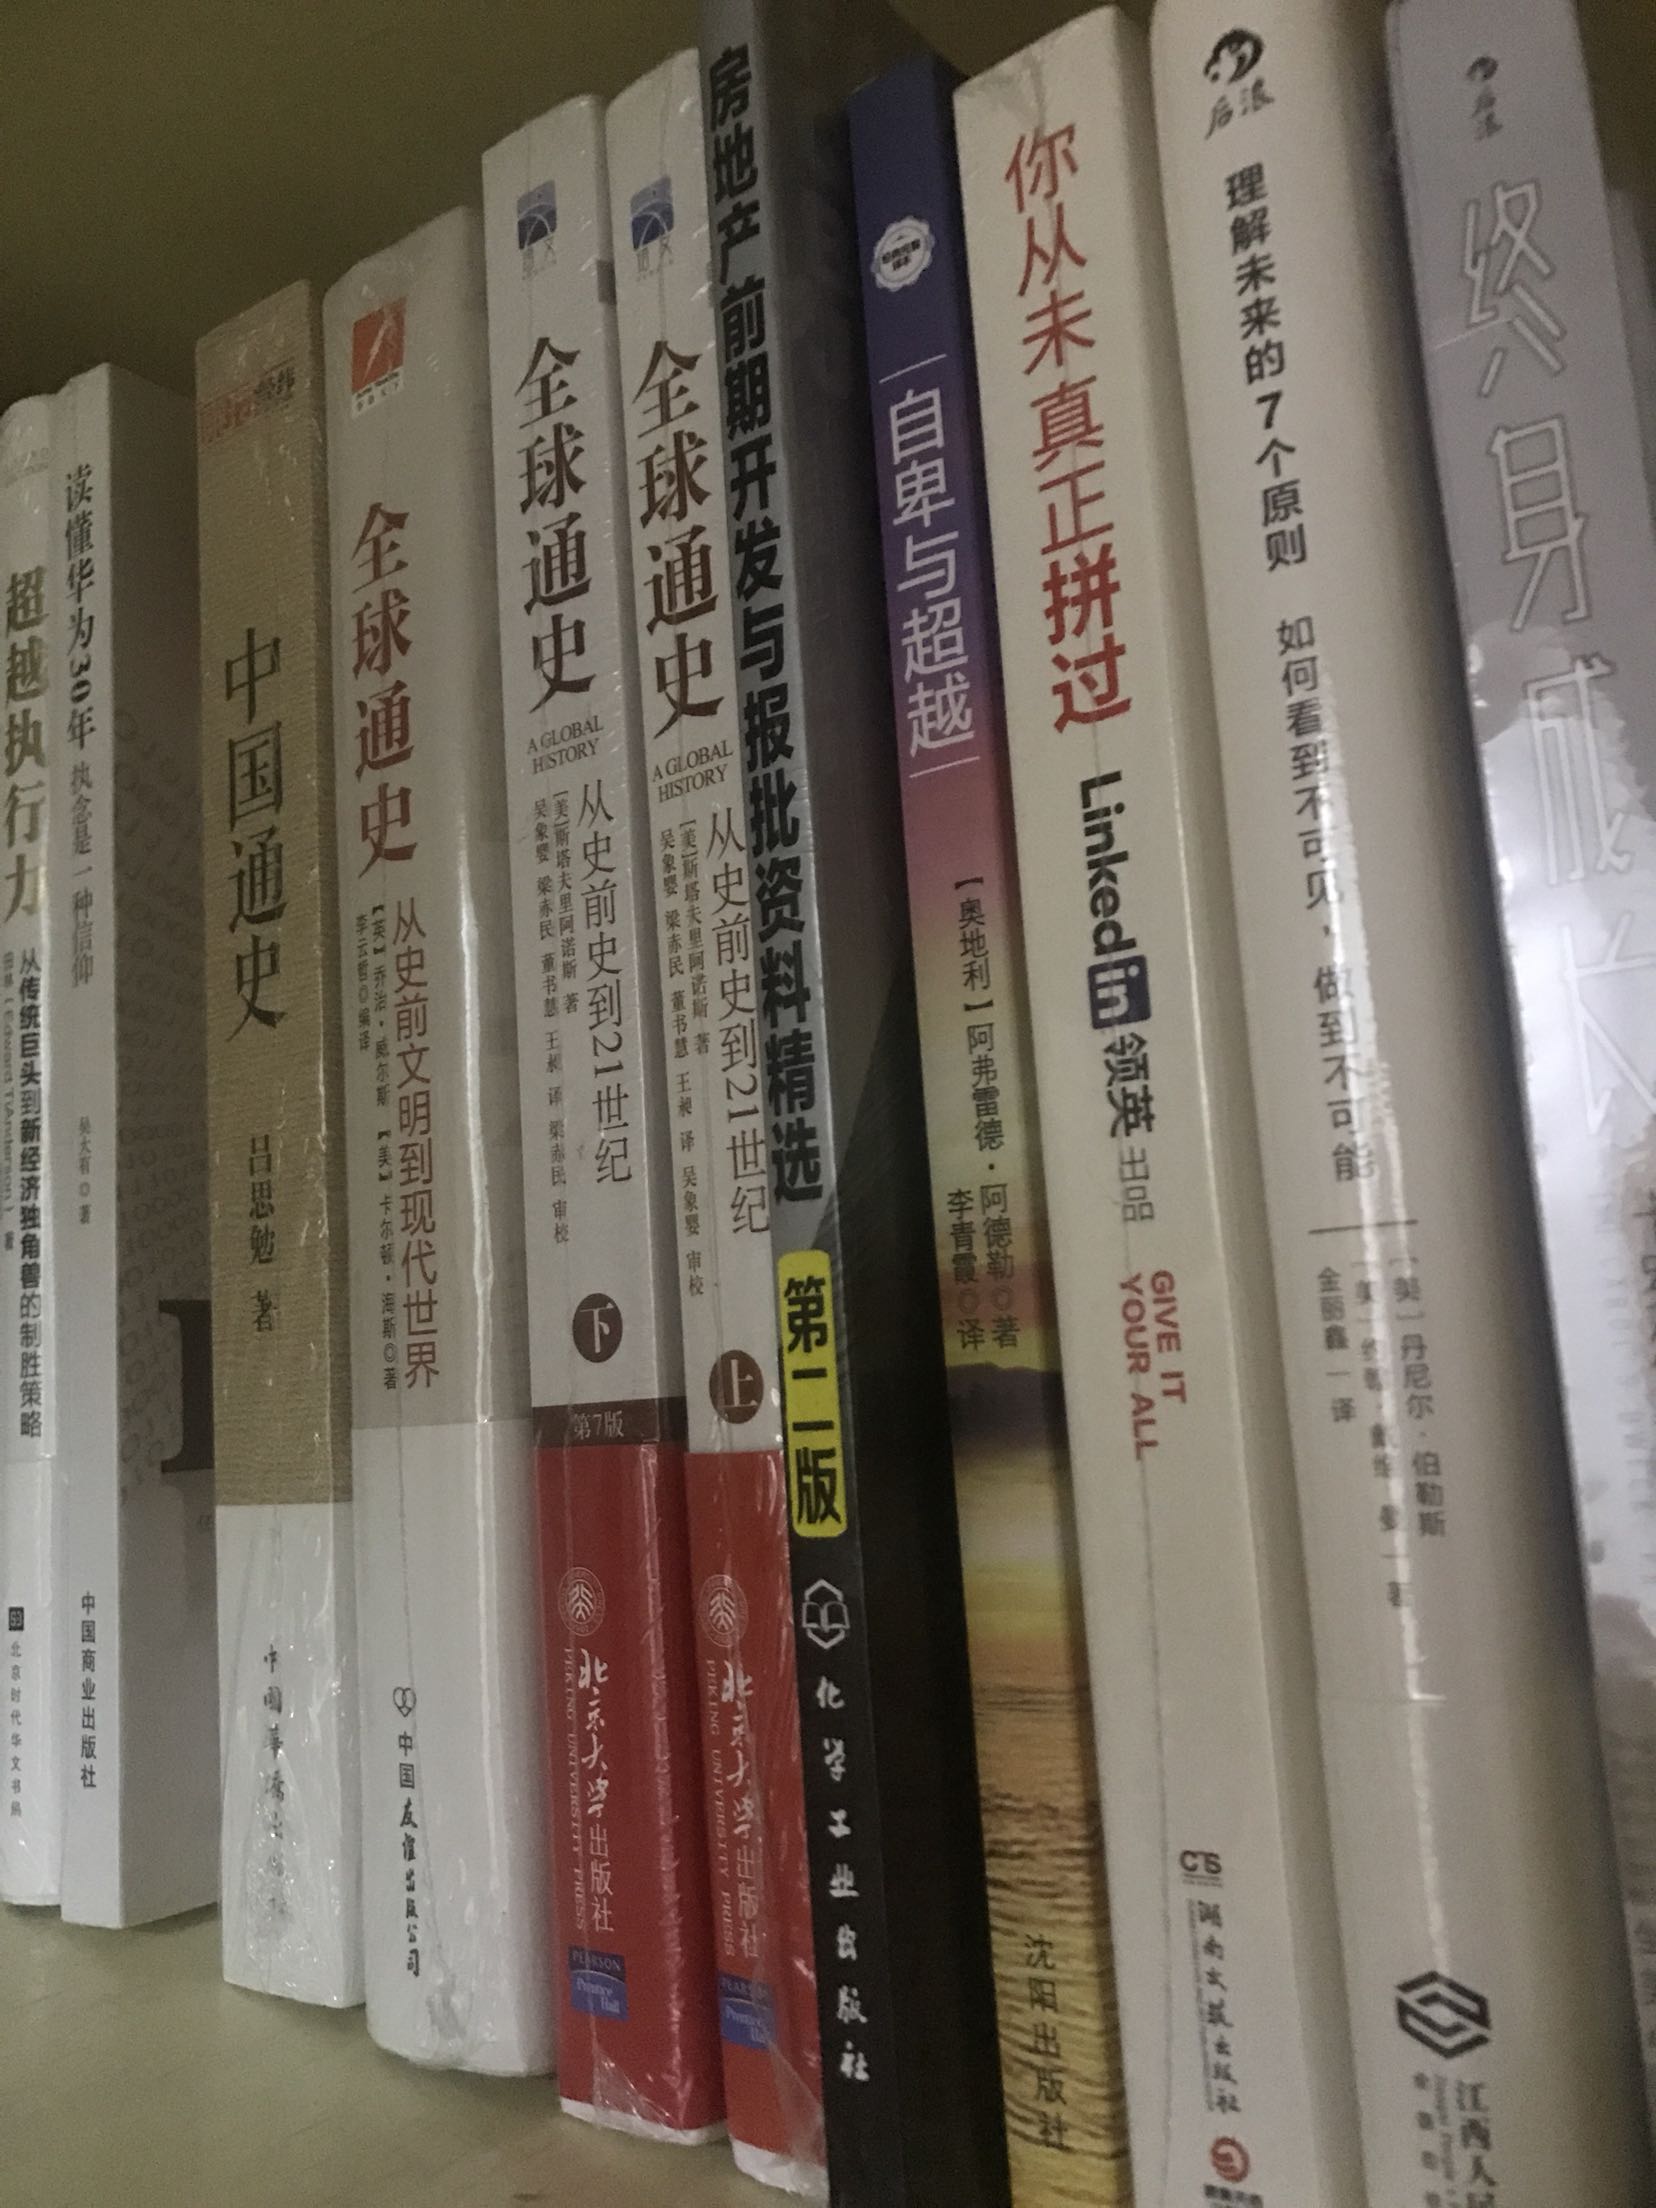 买了好多书，为了京豆，先评论，要过一段时间看完再追加评论了。